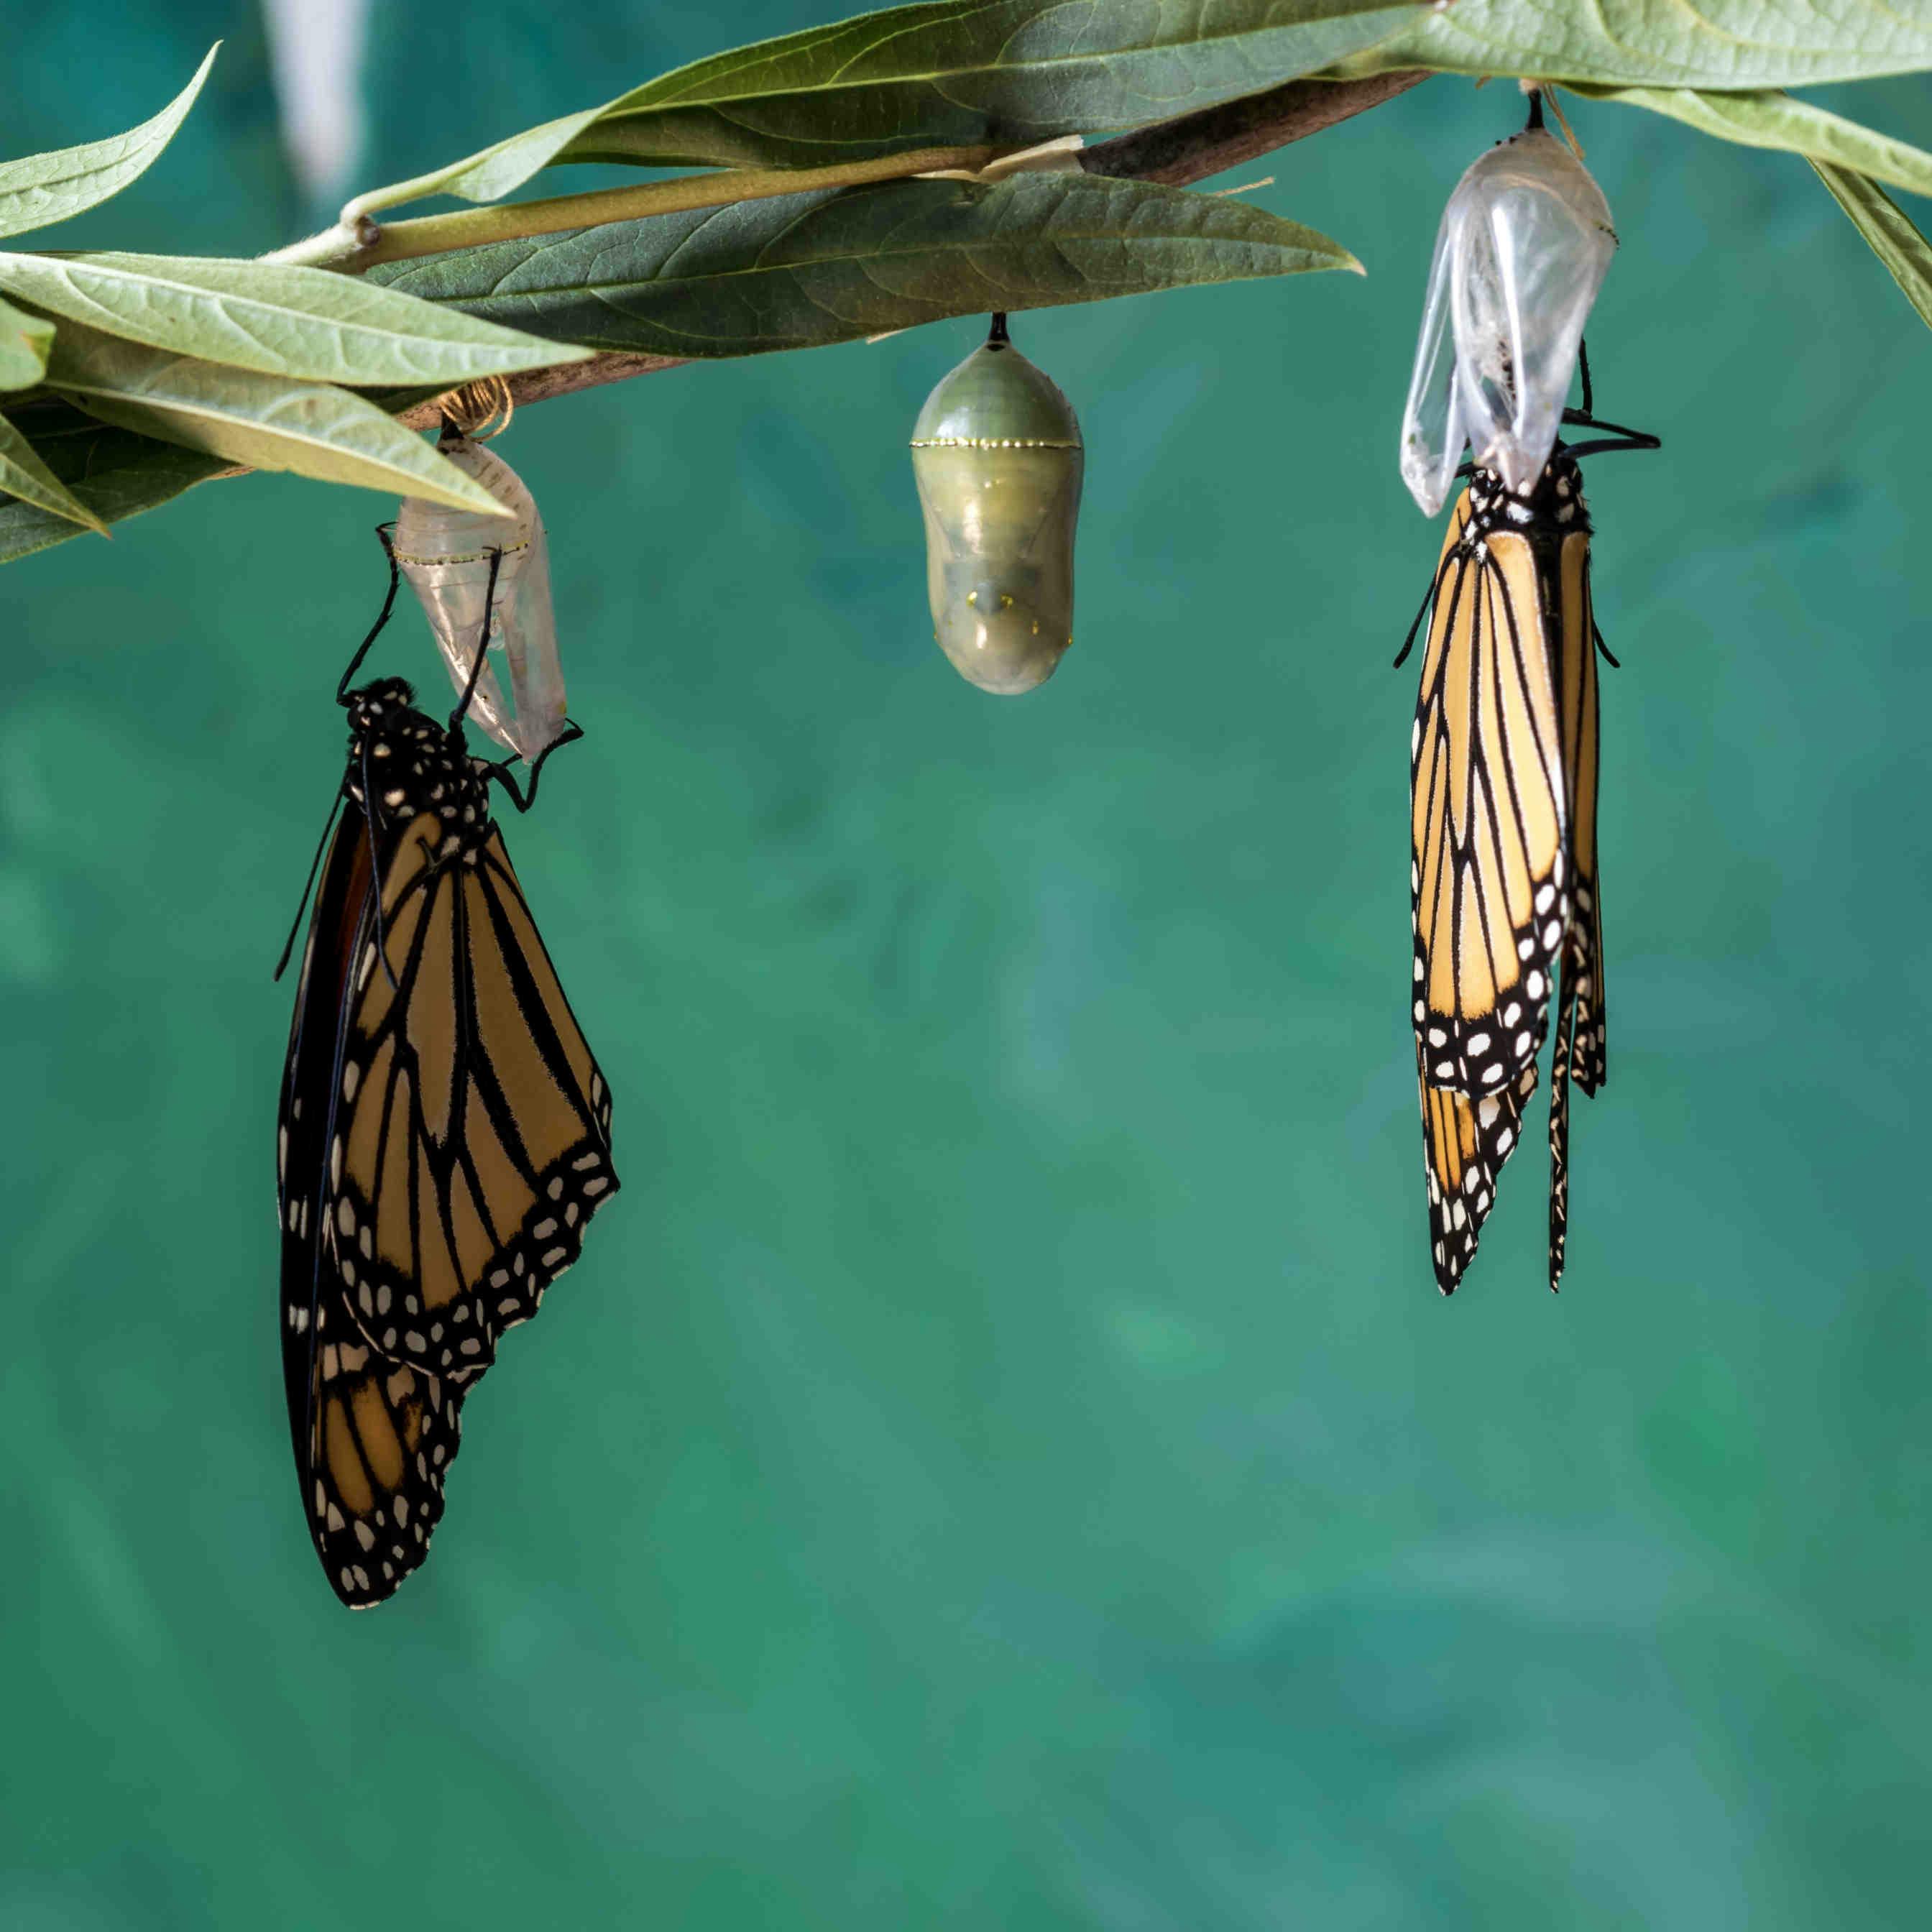 Le cycle de vie des papillons : les étapes